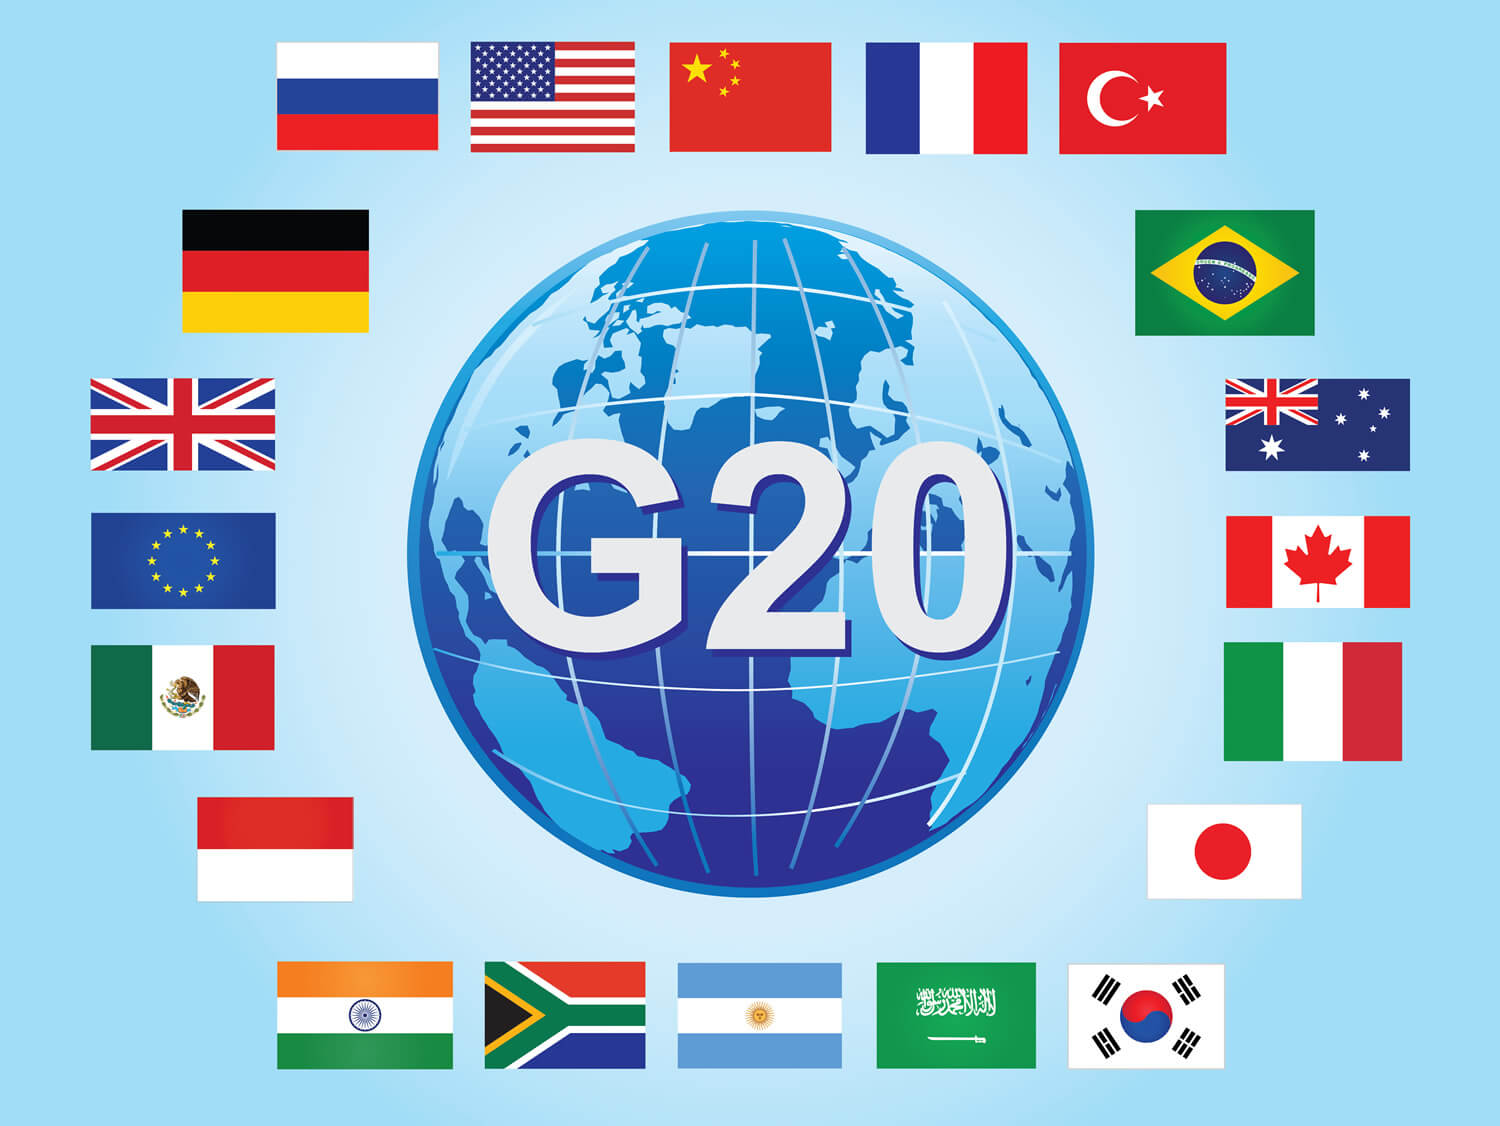 जी-20 समूह ने अफगानिस्तान तक मानवीय सहायता पहुंच की मांग की